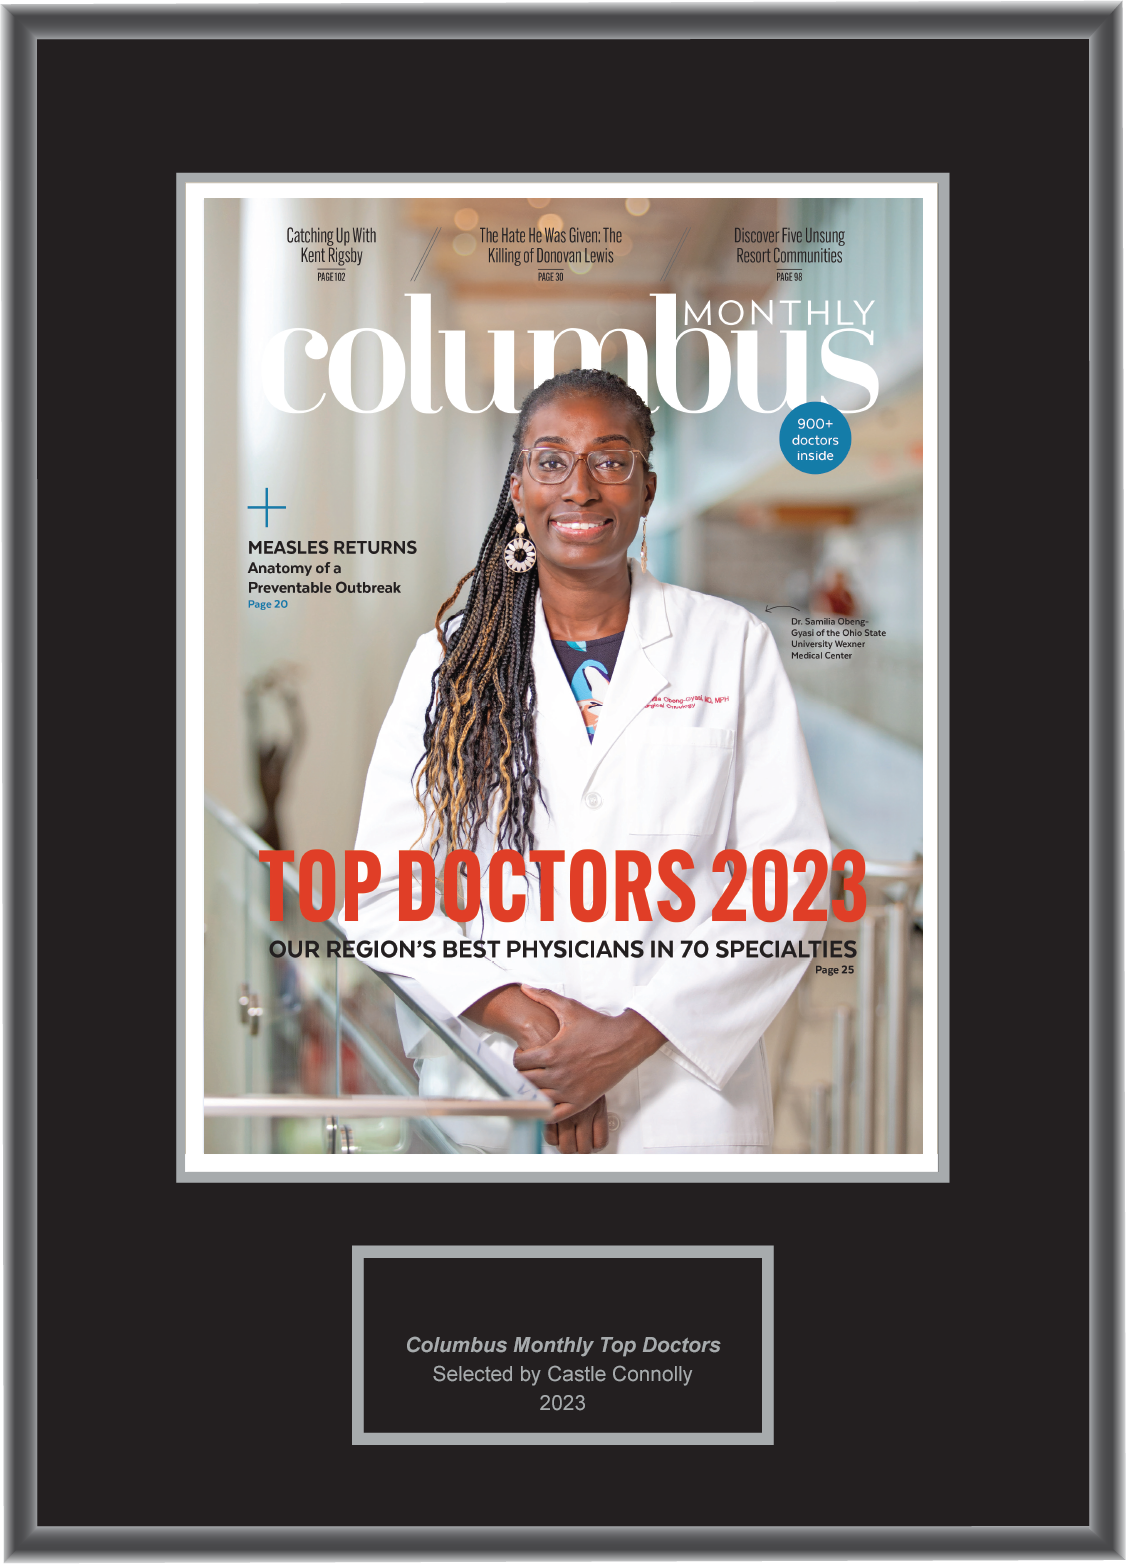 Columbus Monthly Top Doctors 2023 - Plaque